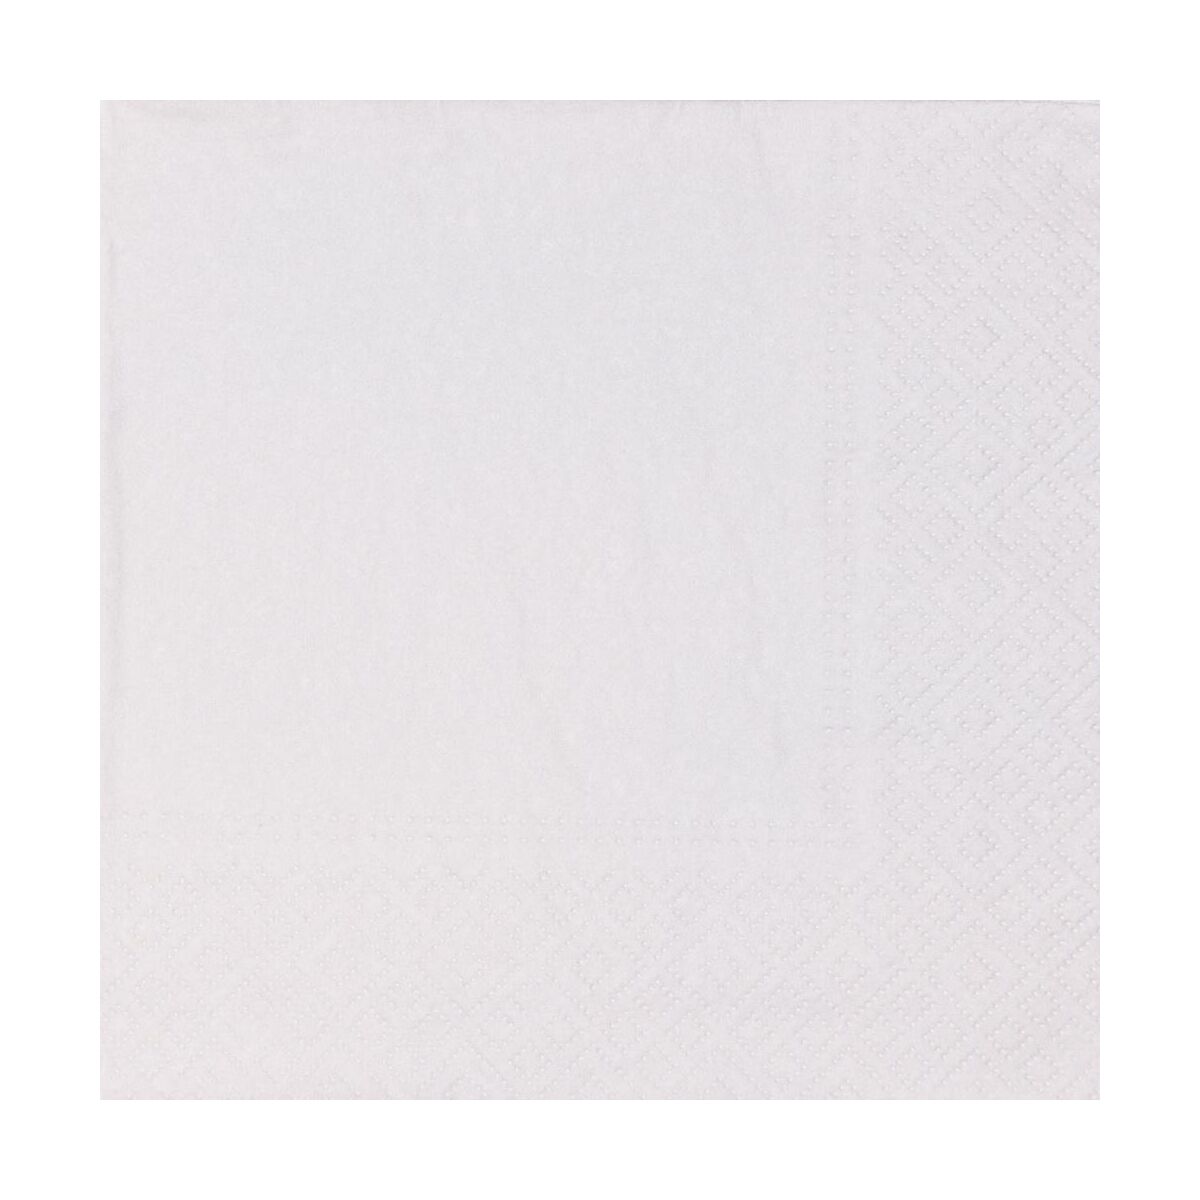 Serwetki Unicolor białe 33 x 33 cm 10 szt.